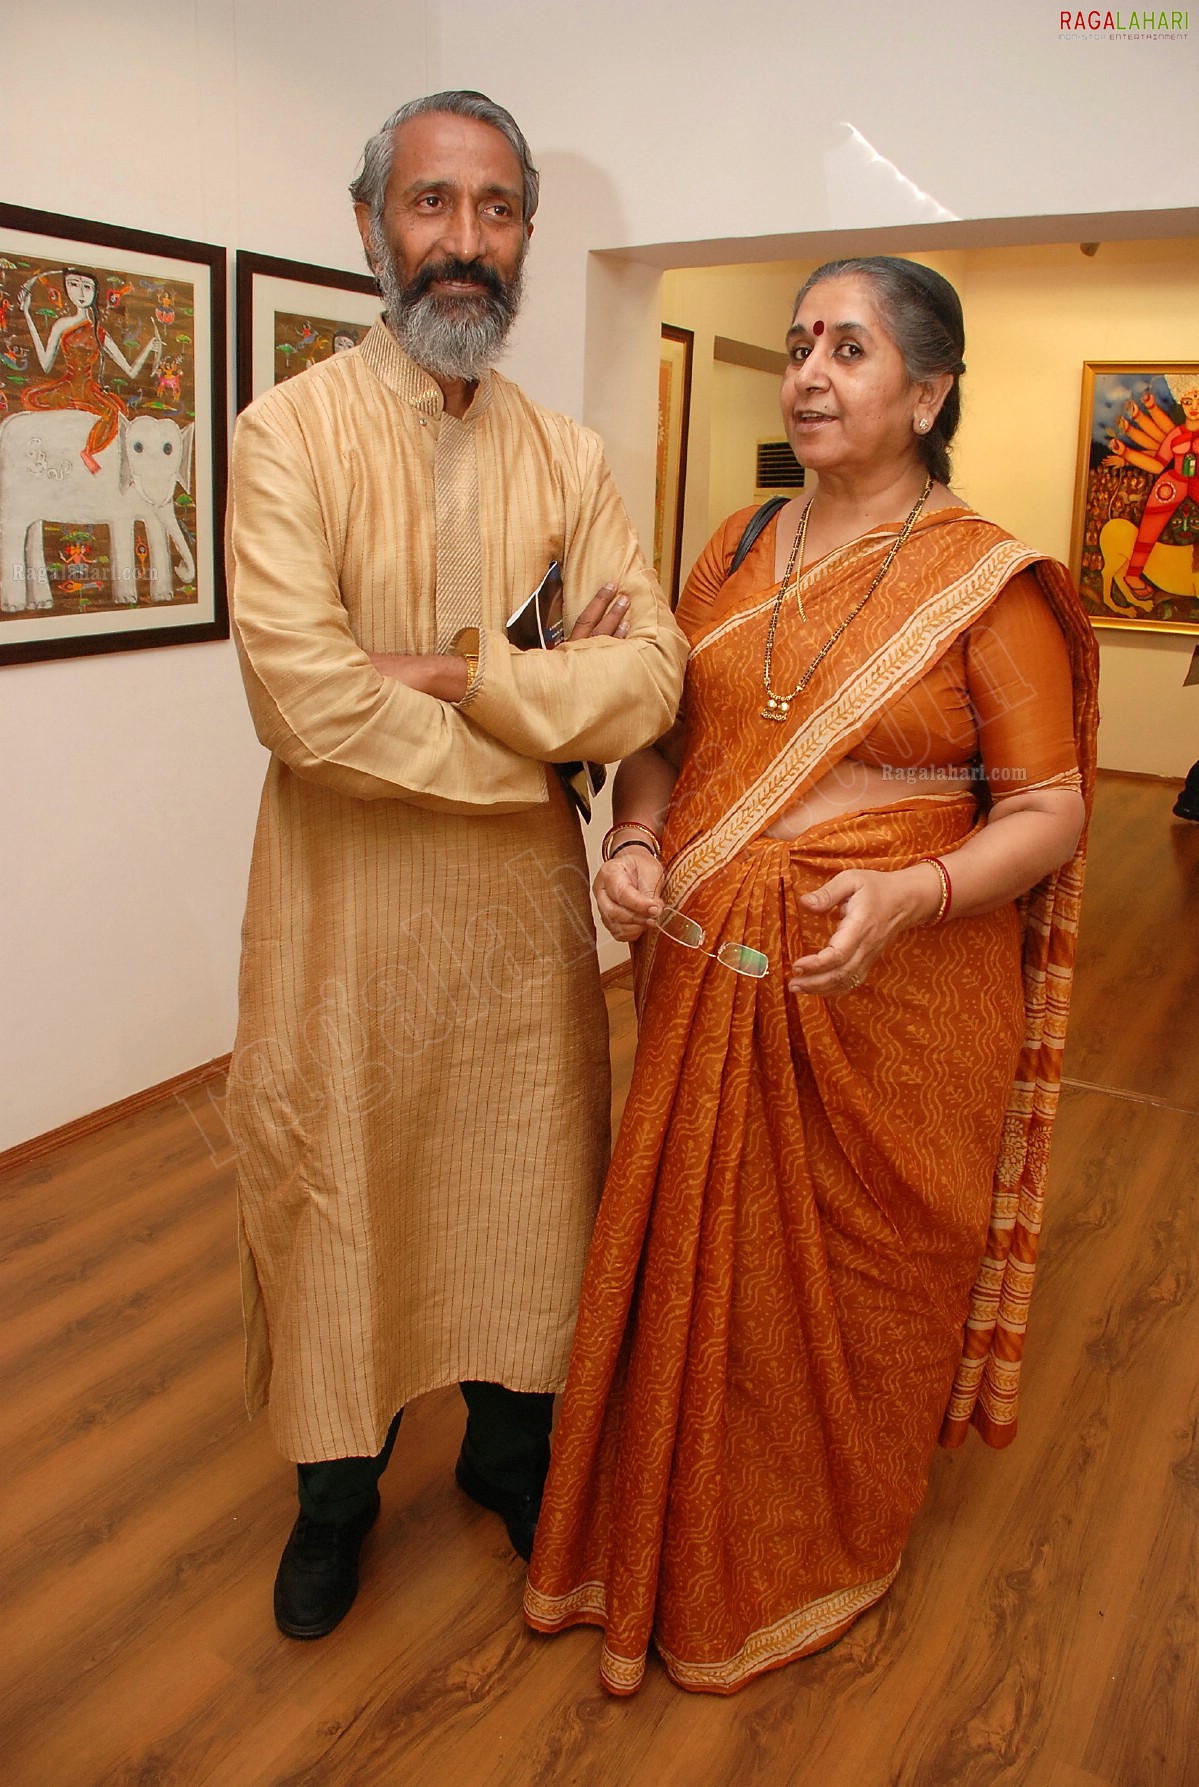 Shakti Kalakriti Art Gallery